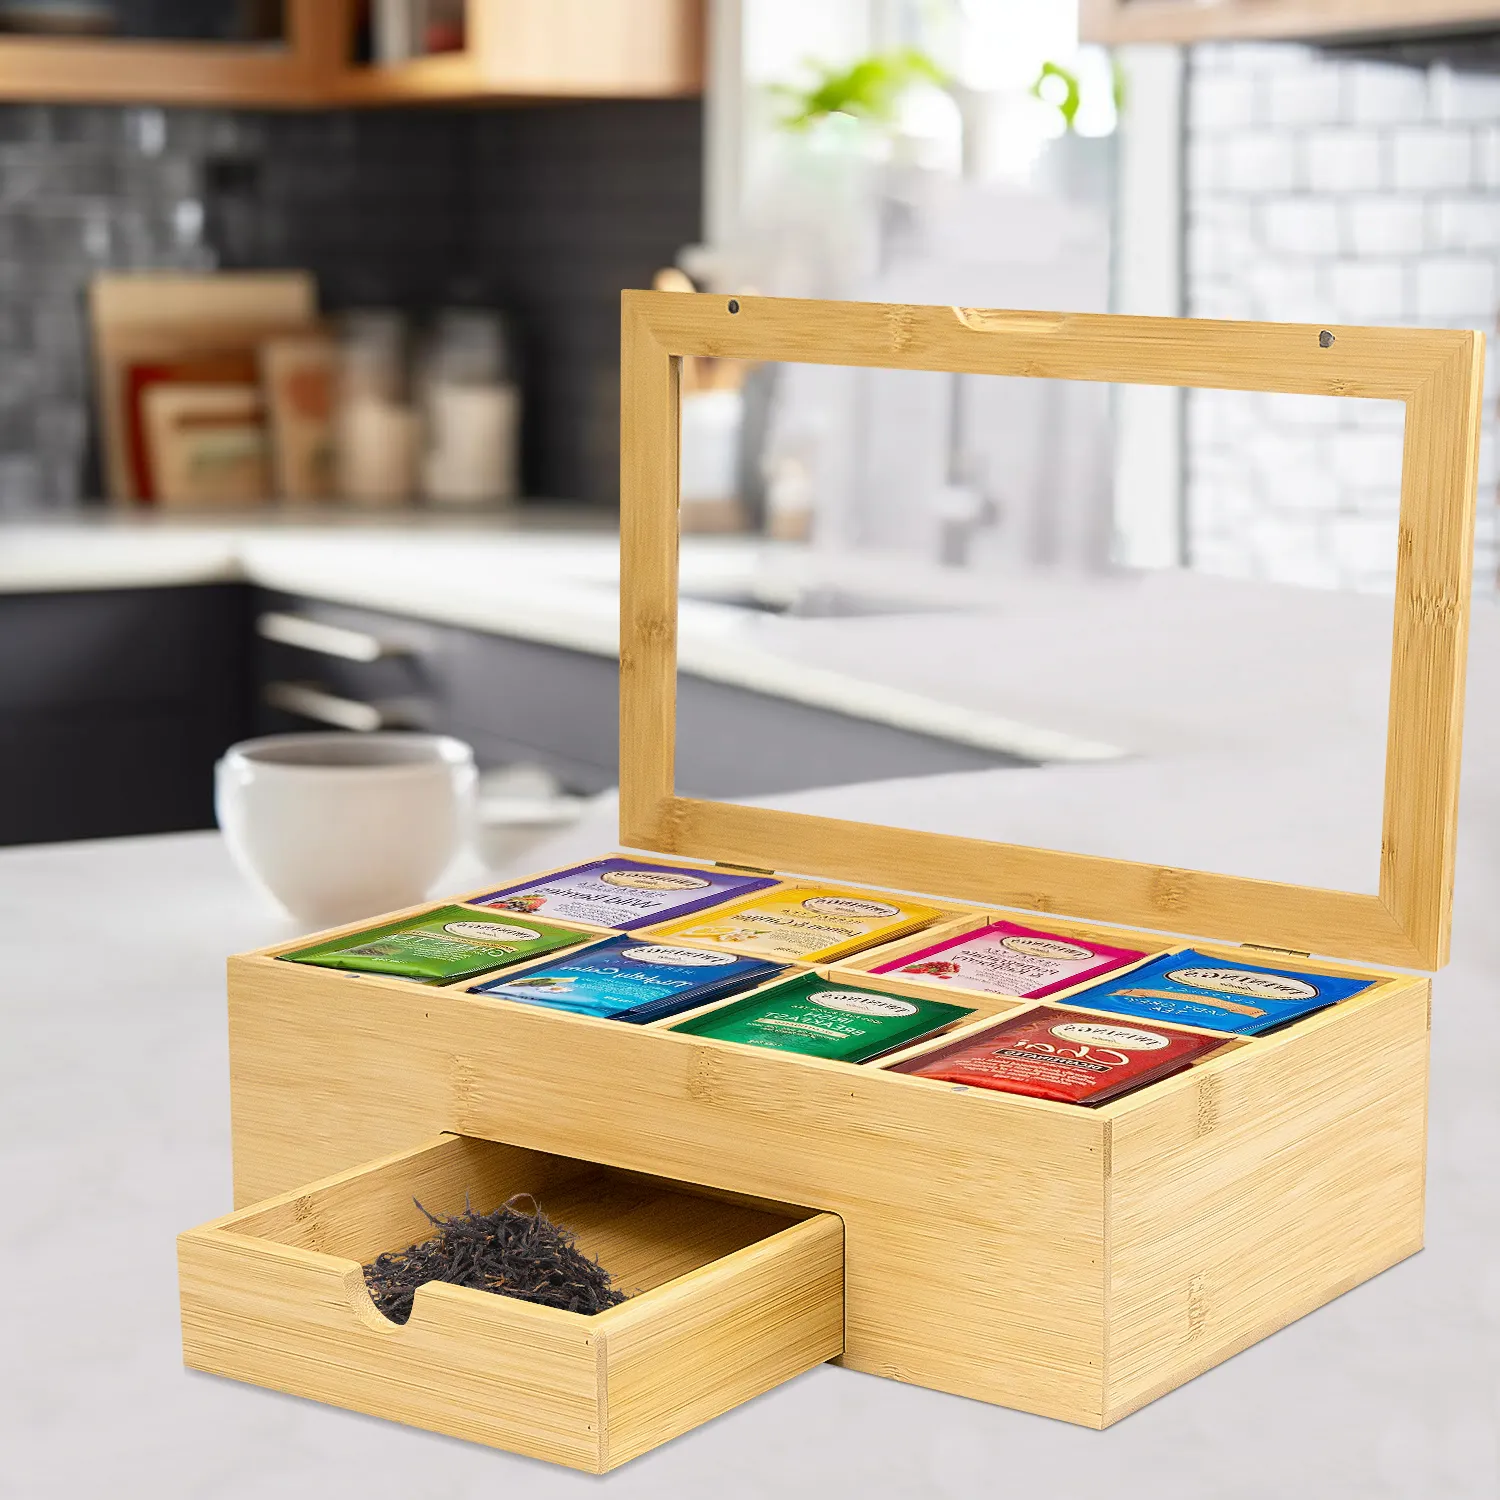 Caixa organizadora de saquinhos de chá de bambu natural de alta qualidade com 6 compartimentos GL, suporte de chá para saquinhos de chá organizador com gaveta